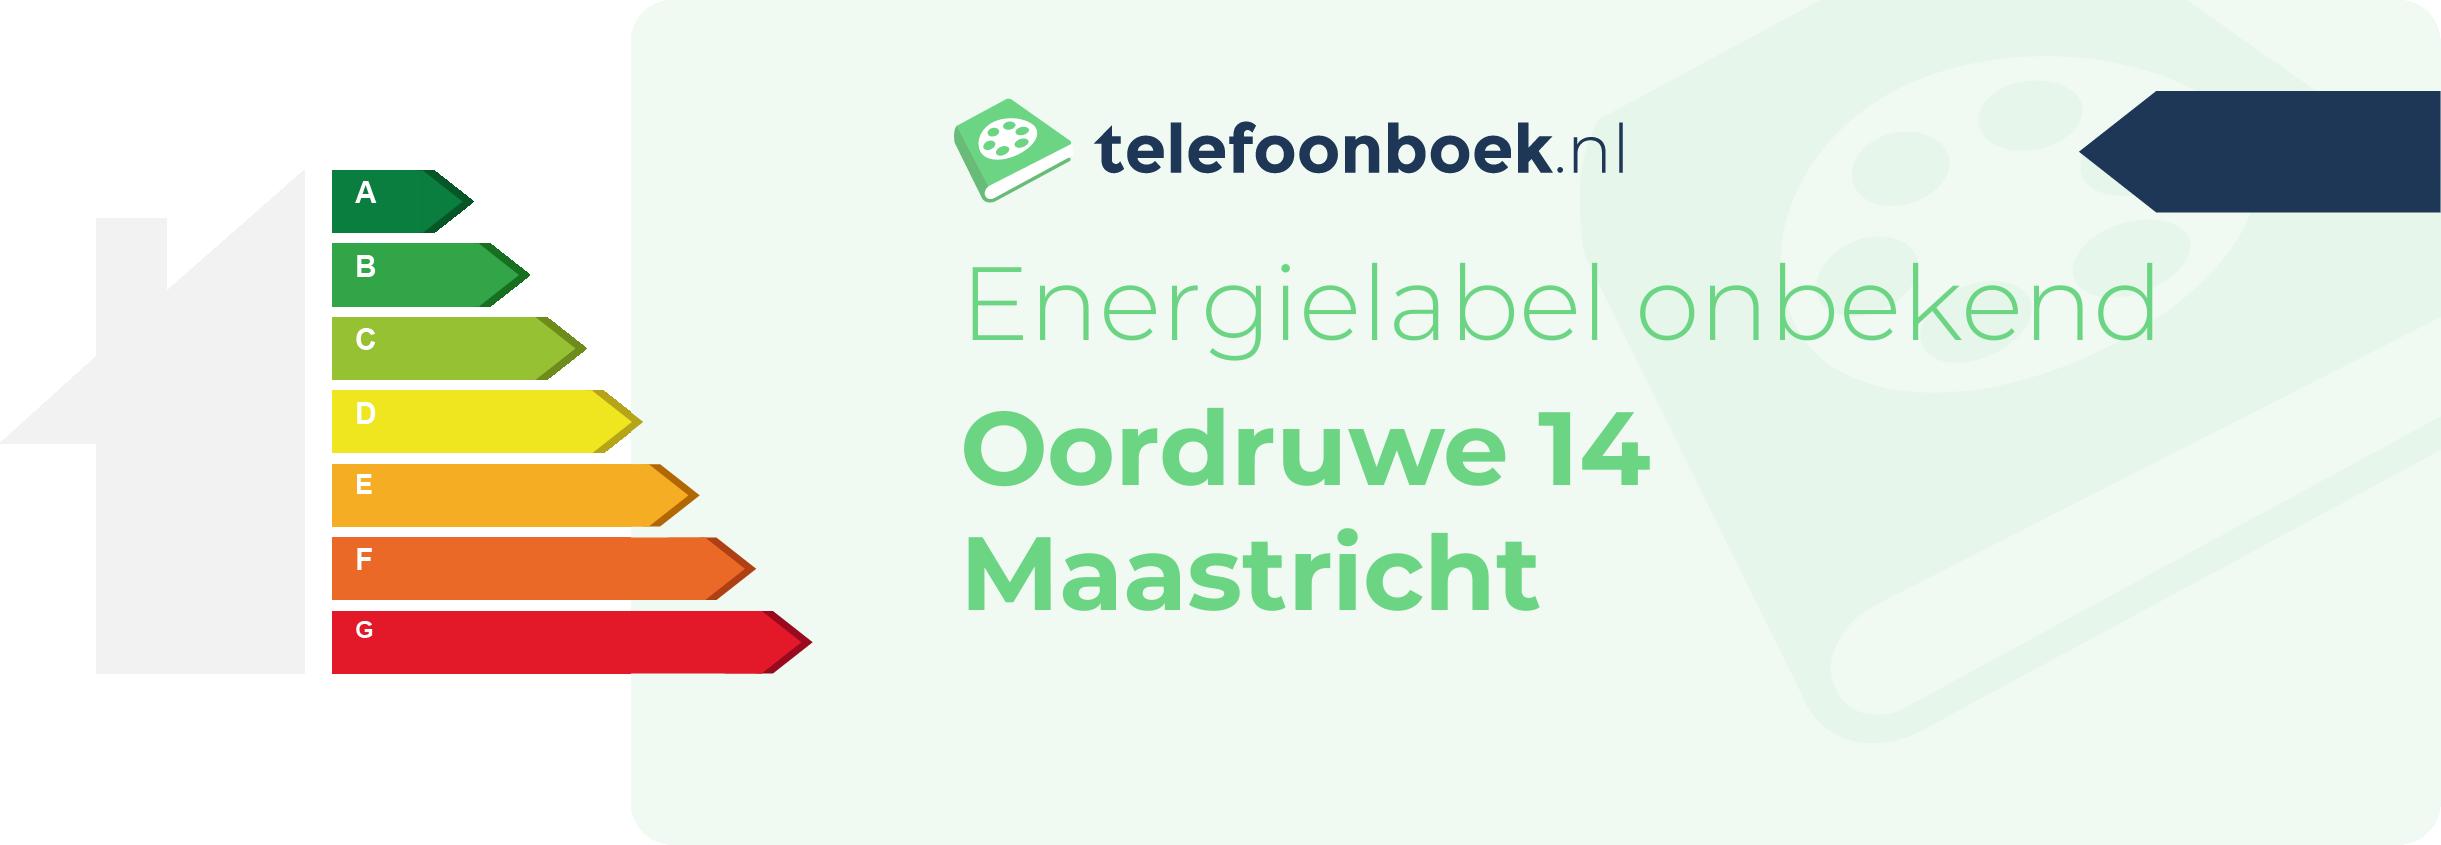 Energielabel Oordruwe 14 Maastricht